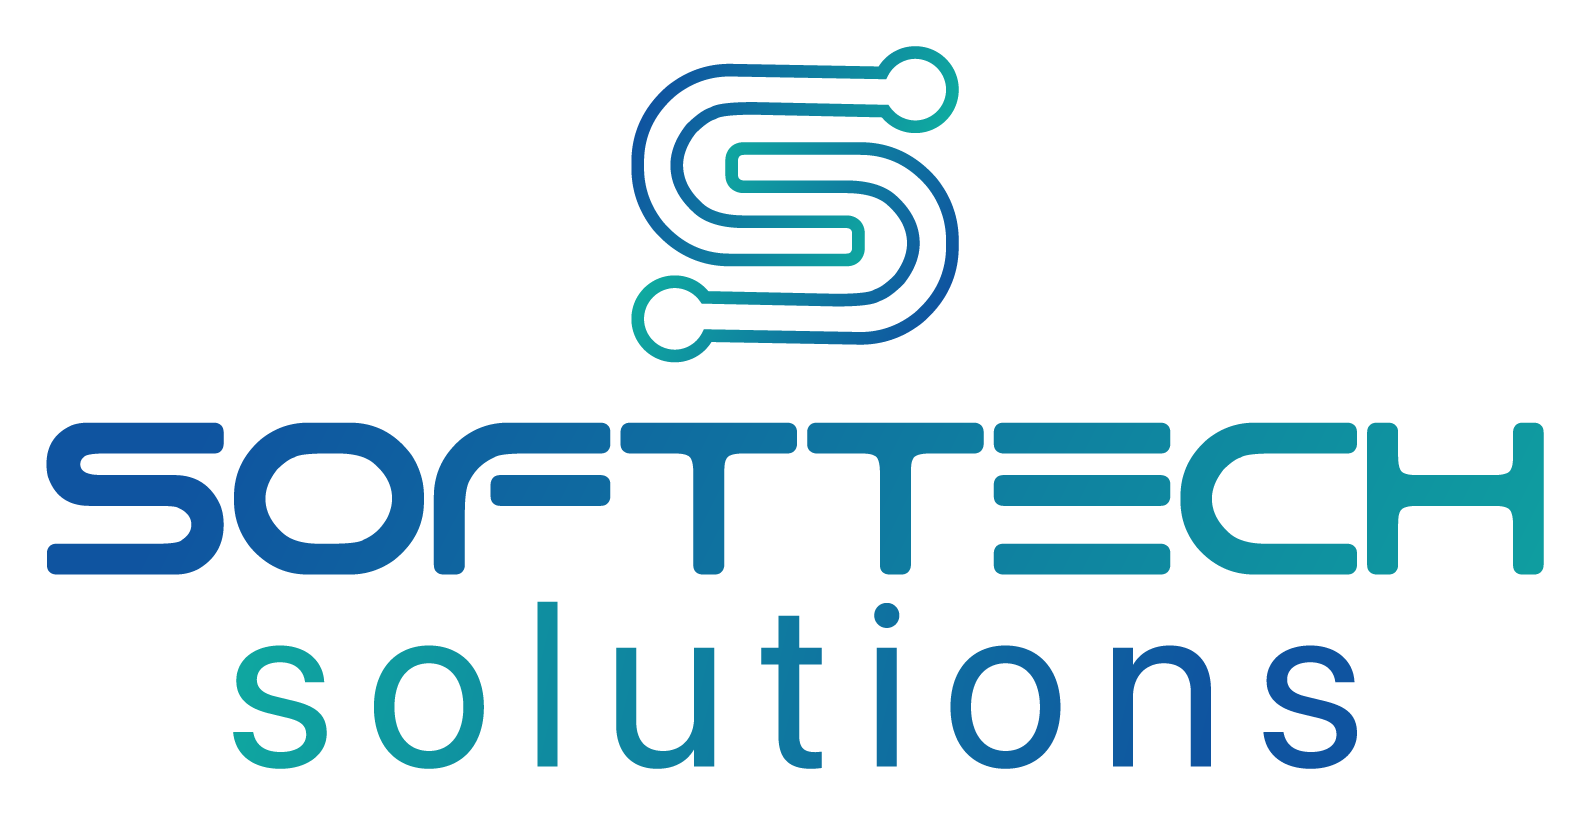 Softtech Solutions